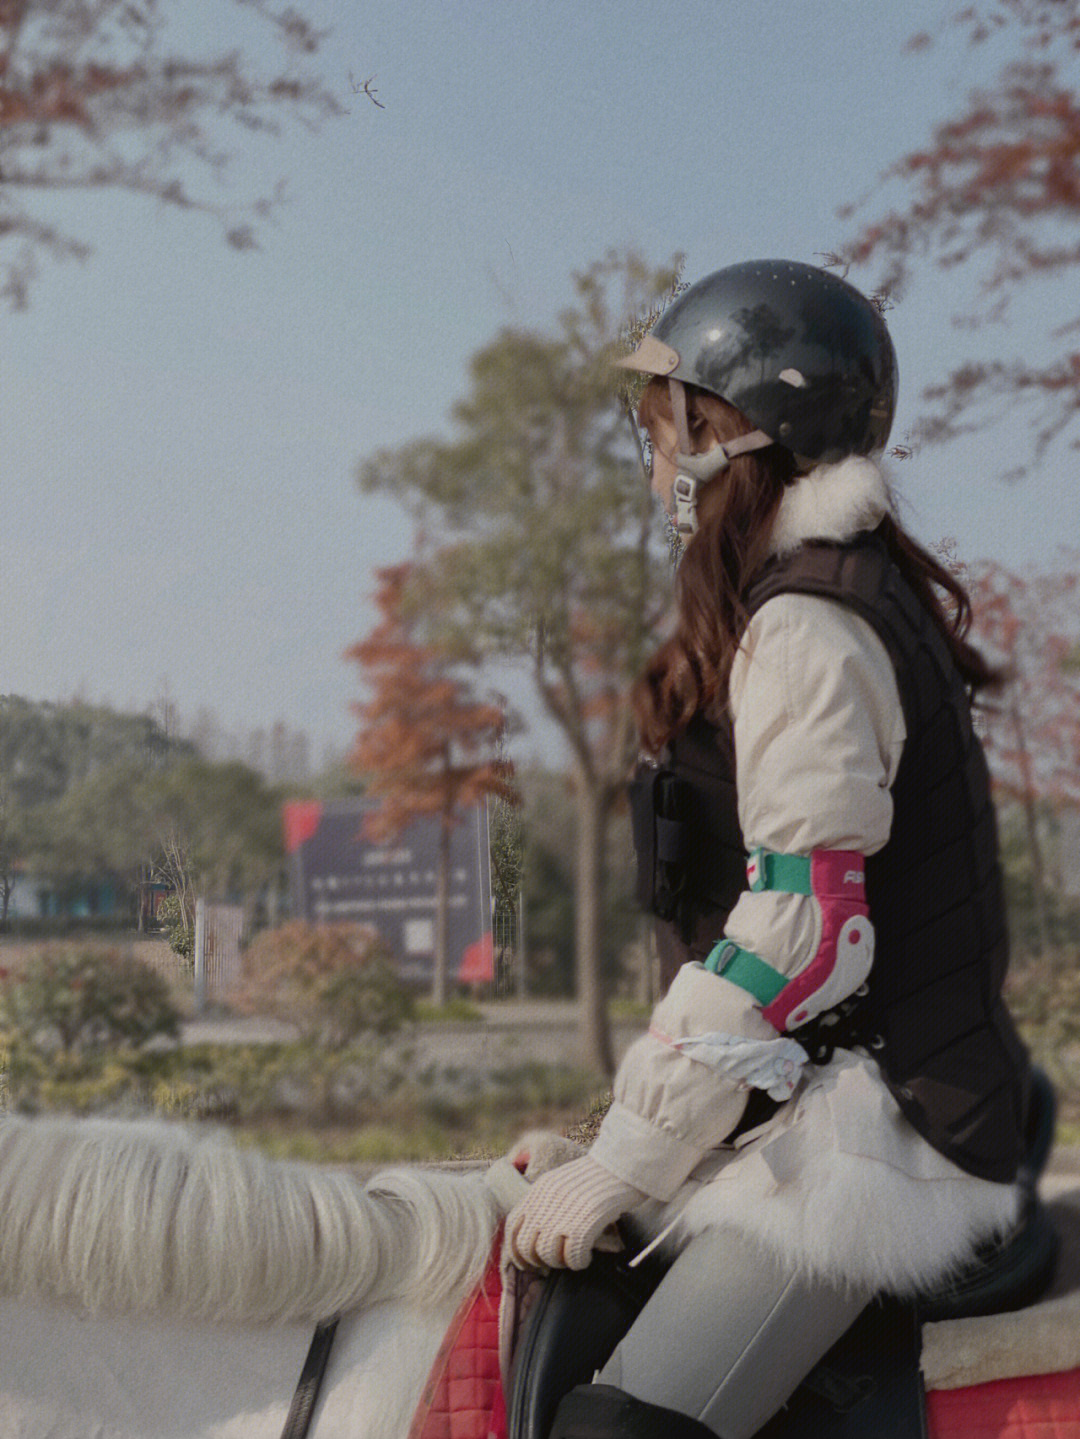 上海女子骑马上街图片